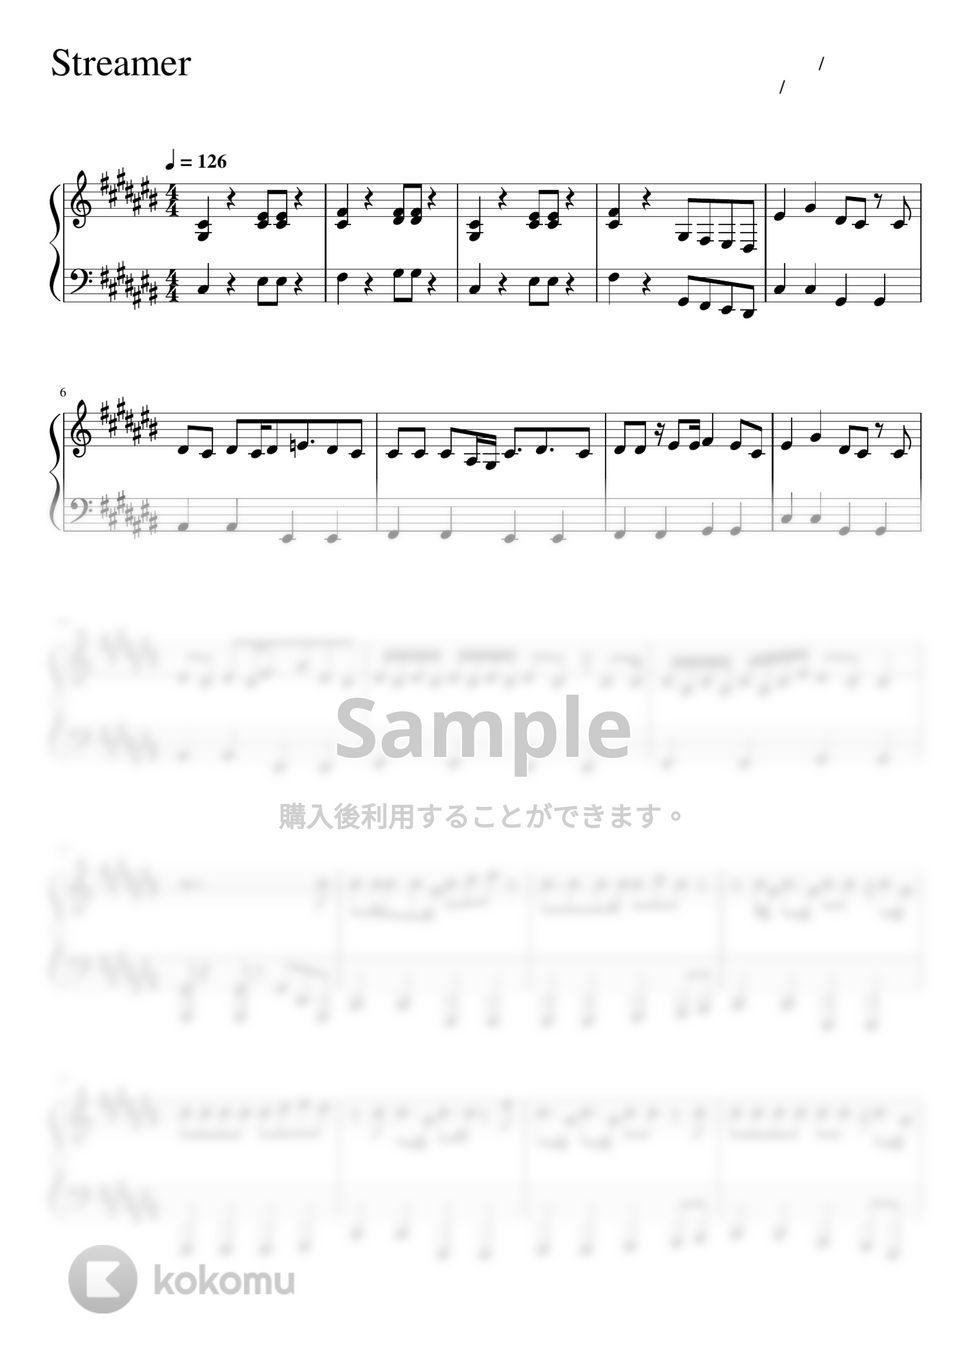 すとぷり - Streamer (ピアノソロ譜) by 萌や氏